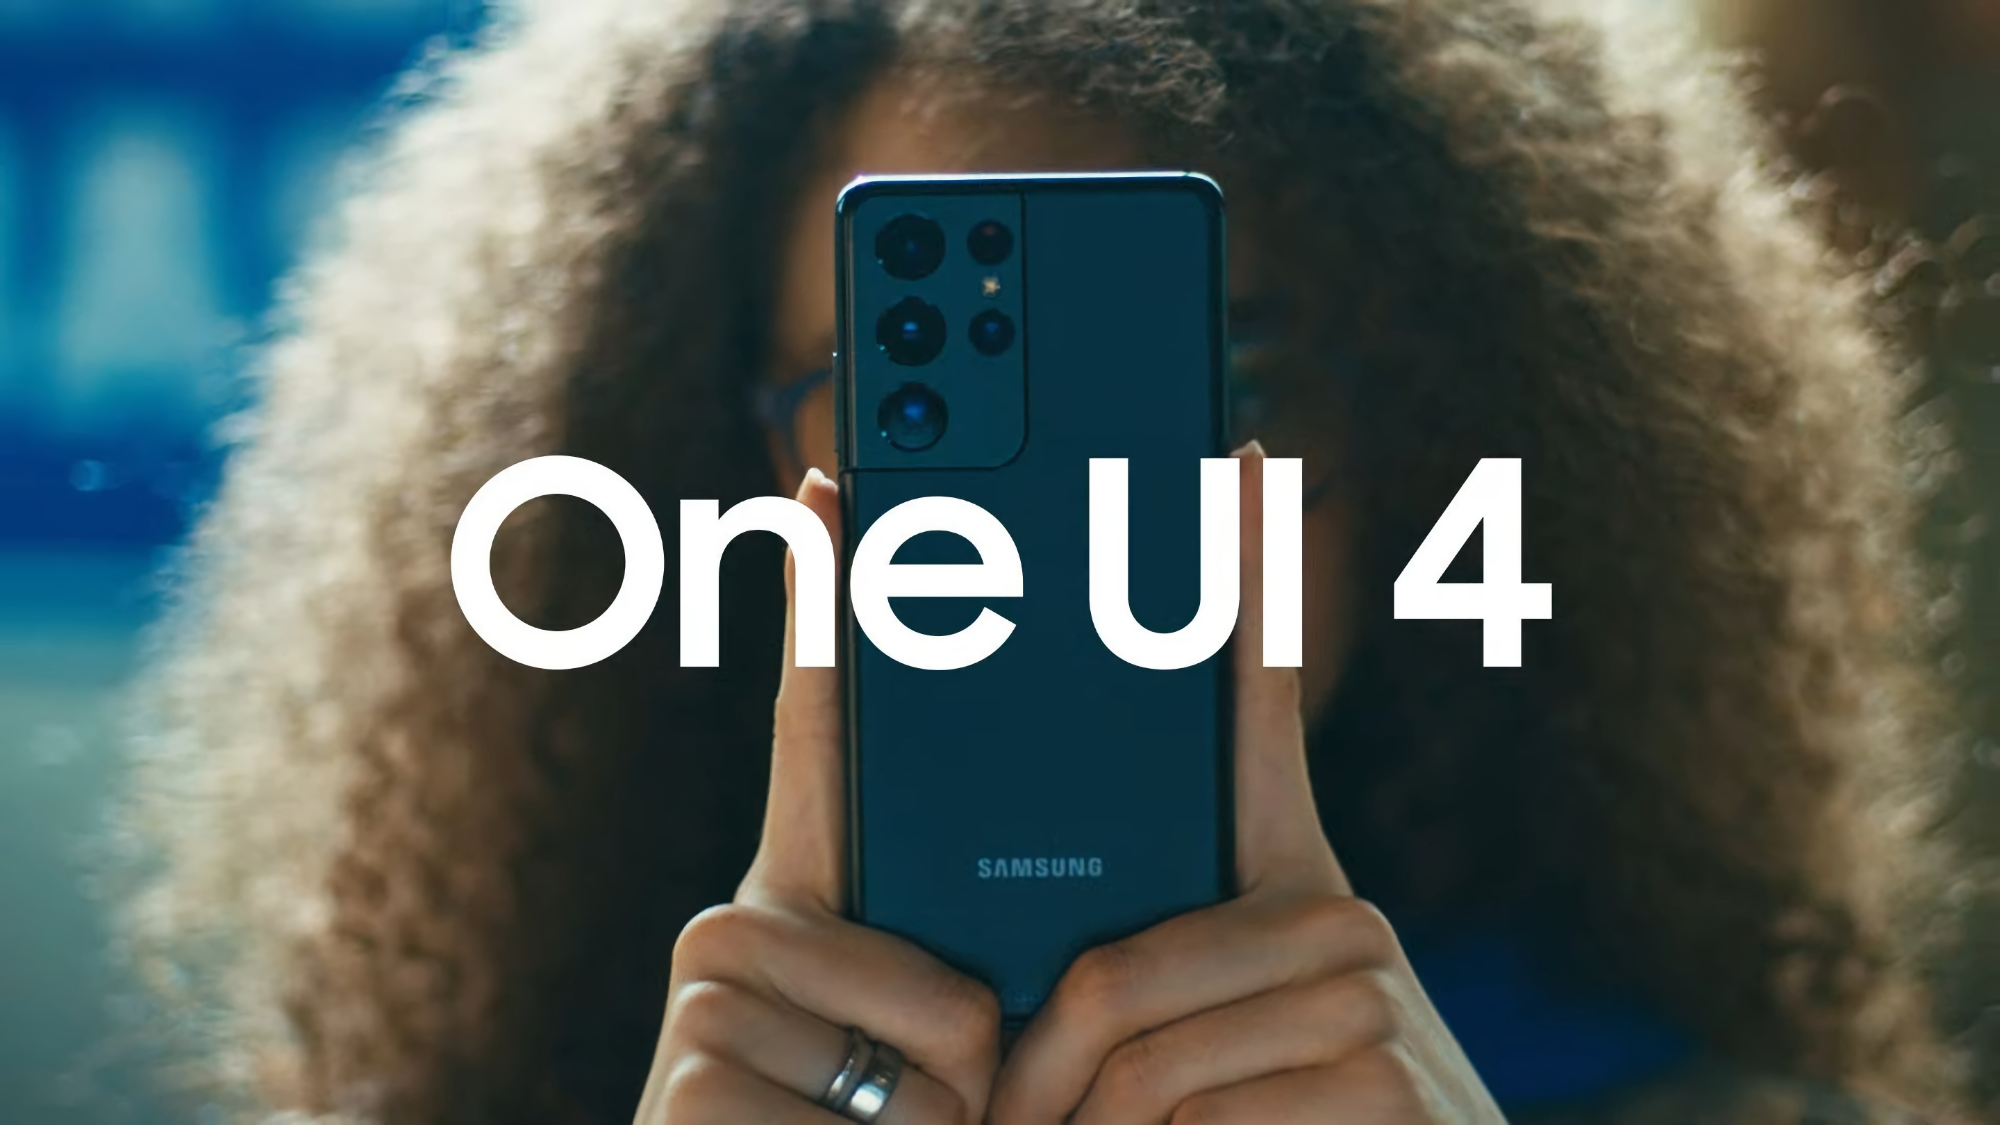 Samsung lanza la tercera versión beta de One UI 4 para el Galaxy S21 con anuncios eliminados, nuevas animaciones y la aplicación del tiempo